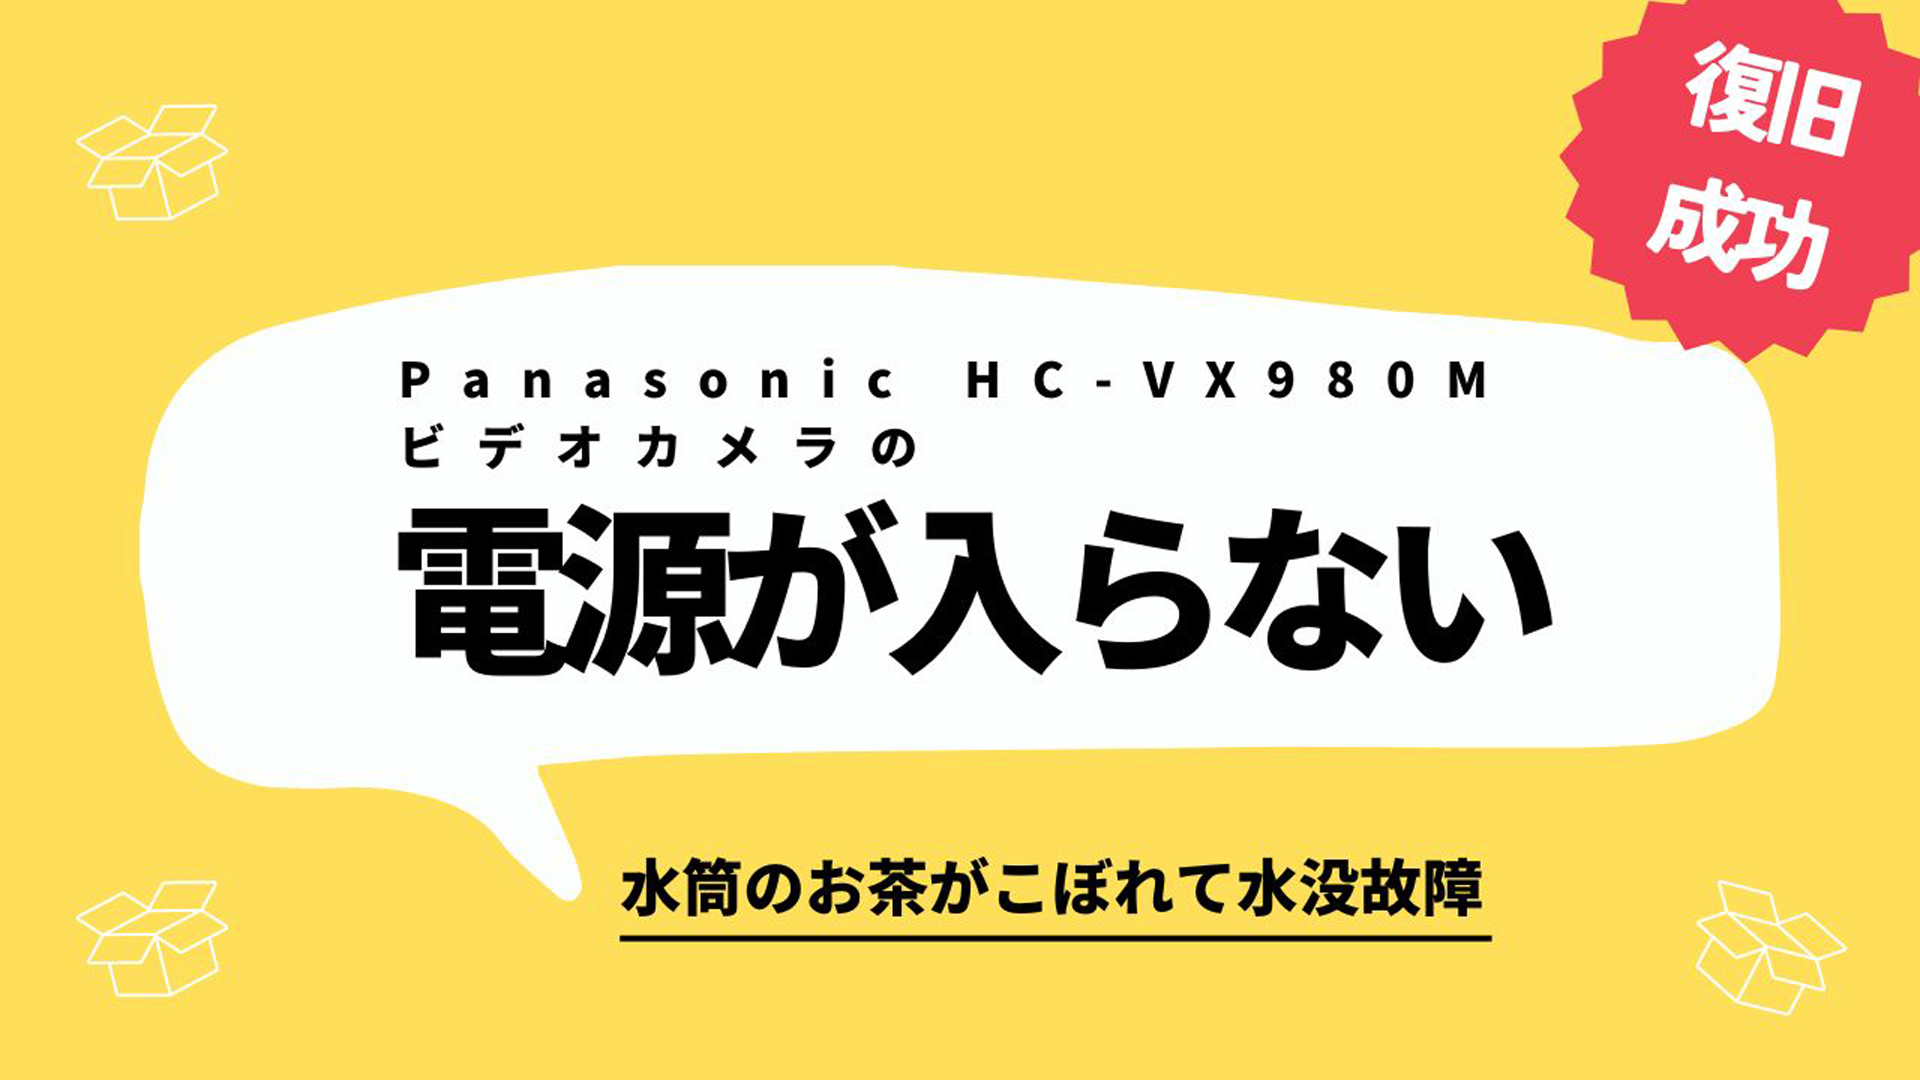 水没ビデオカメラからデータを救出！Panasonic HC-VX980M復旧事例